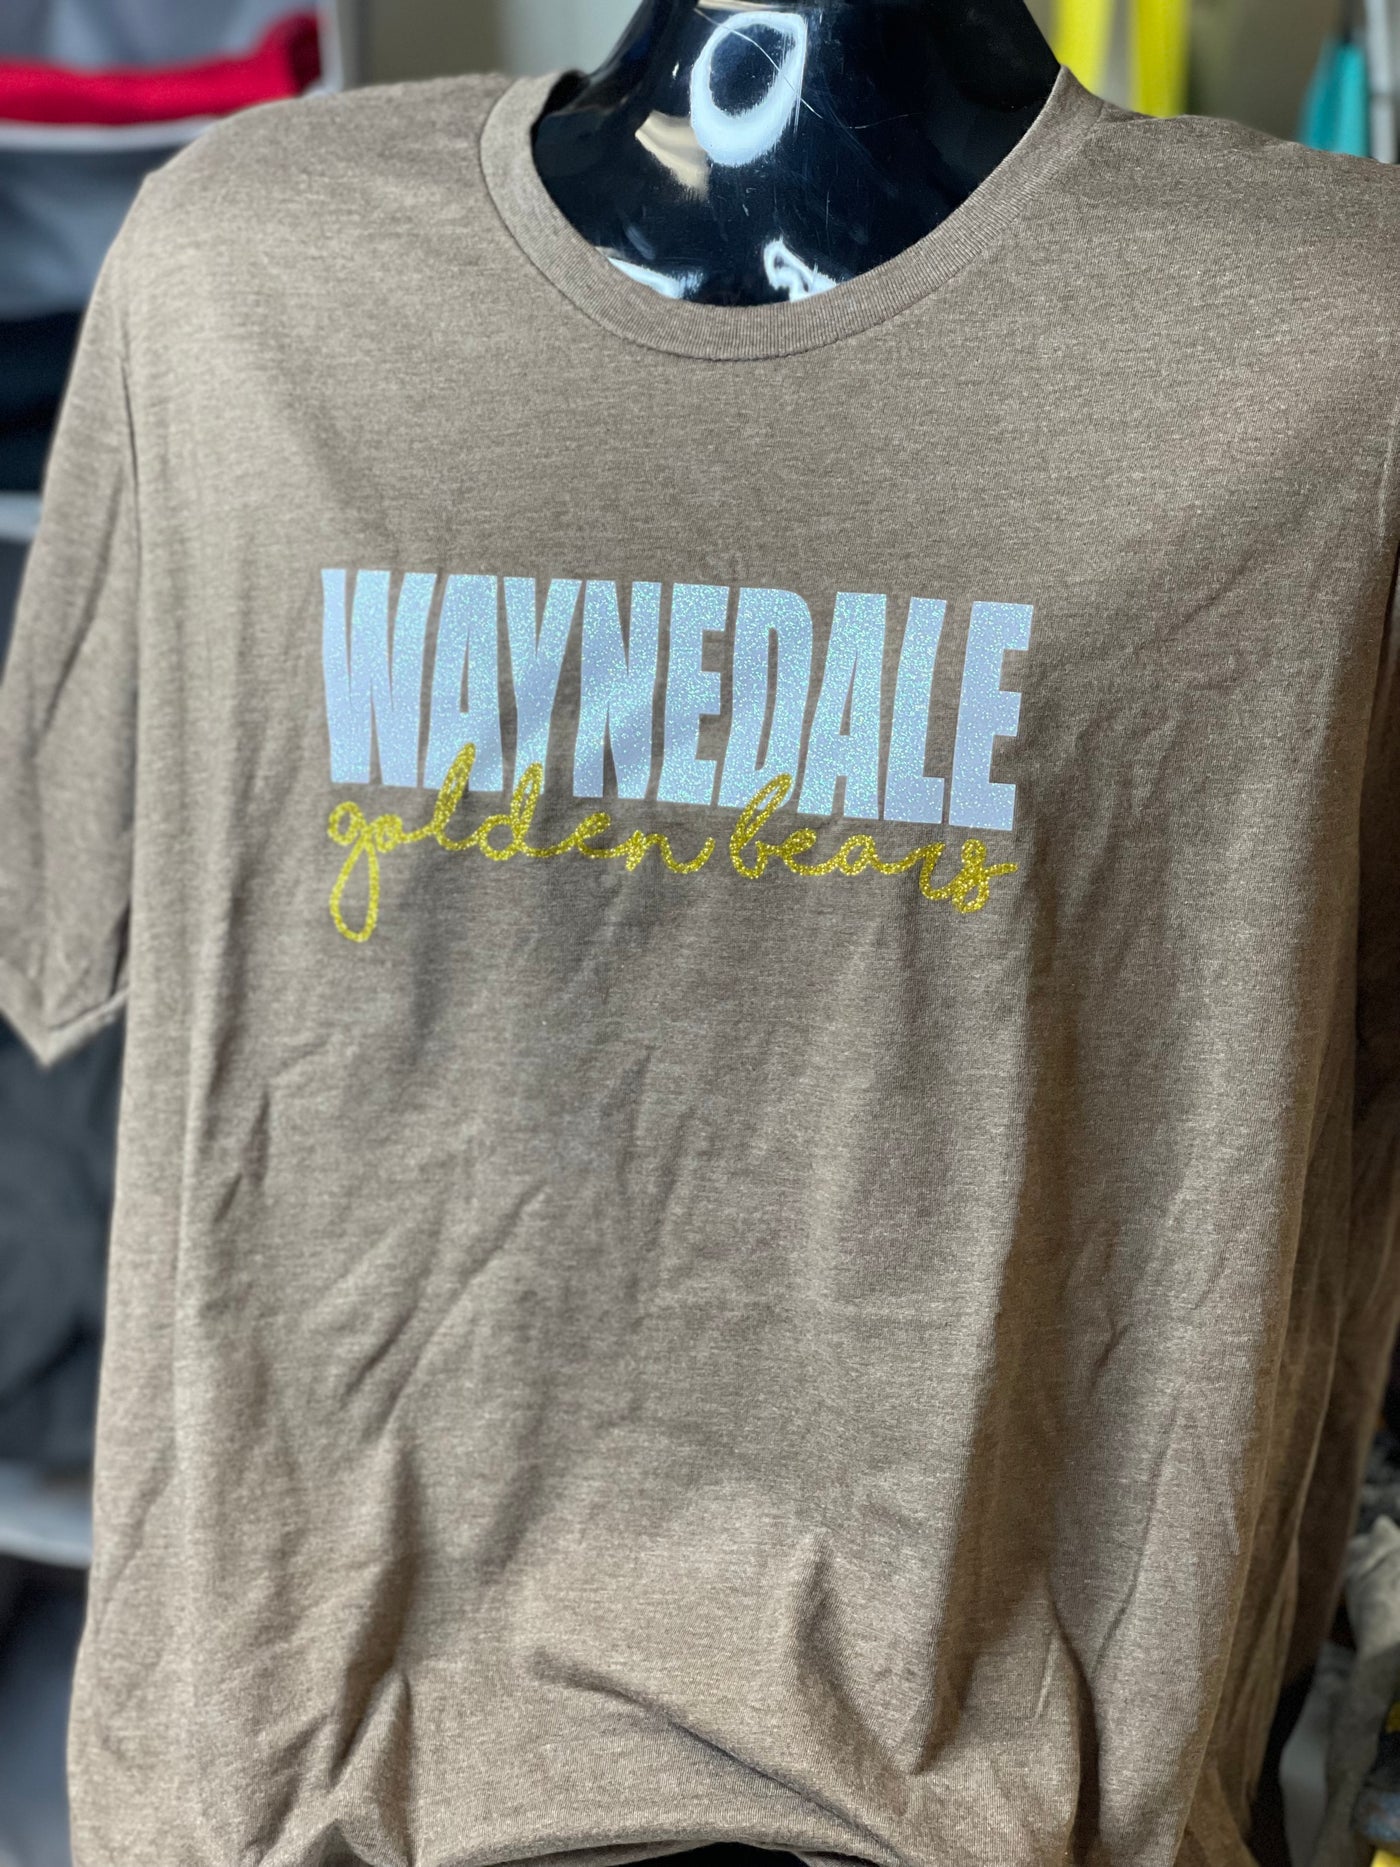 Super soft Waynedale Golden Bears Glitter Short Sleeve T-shirt